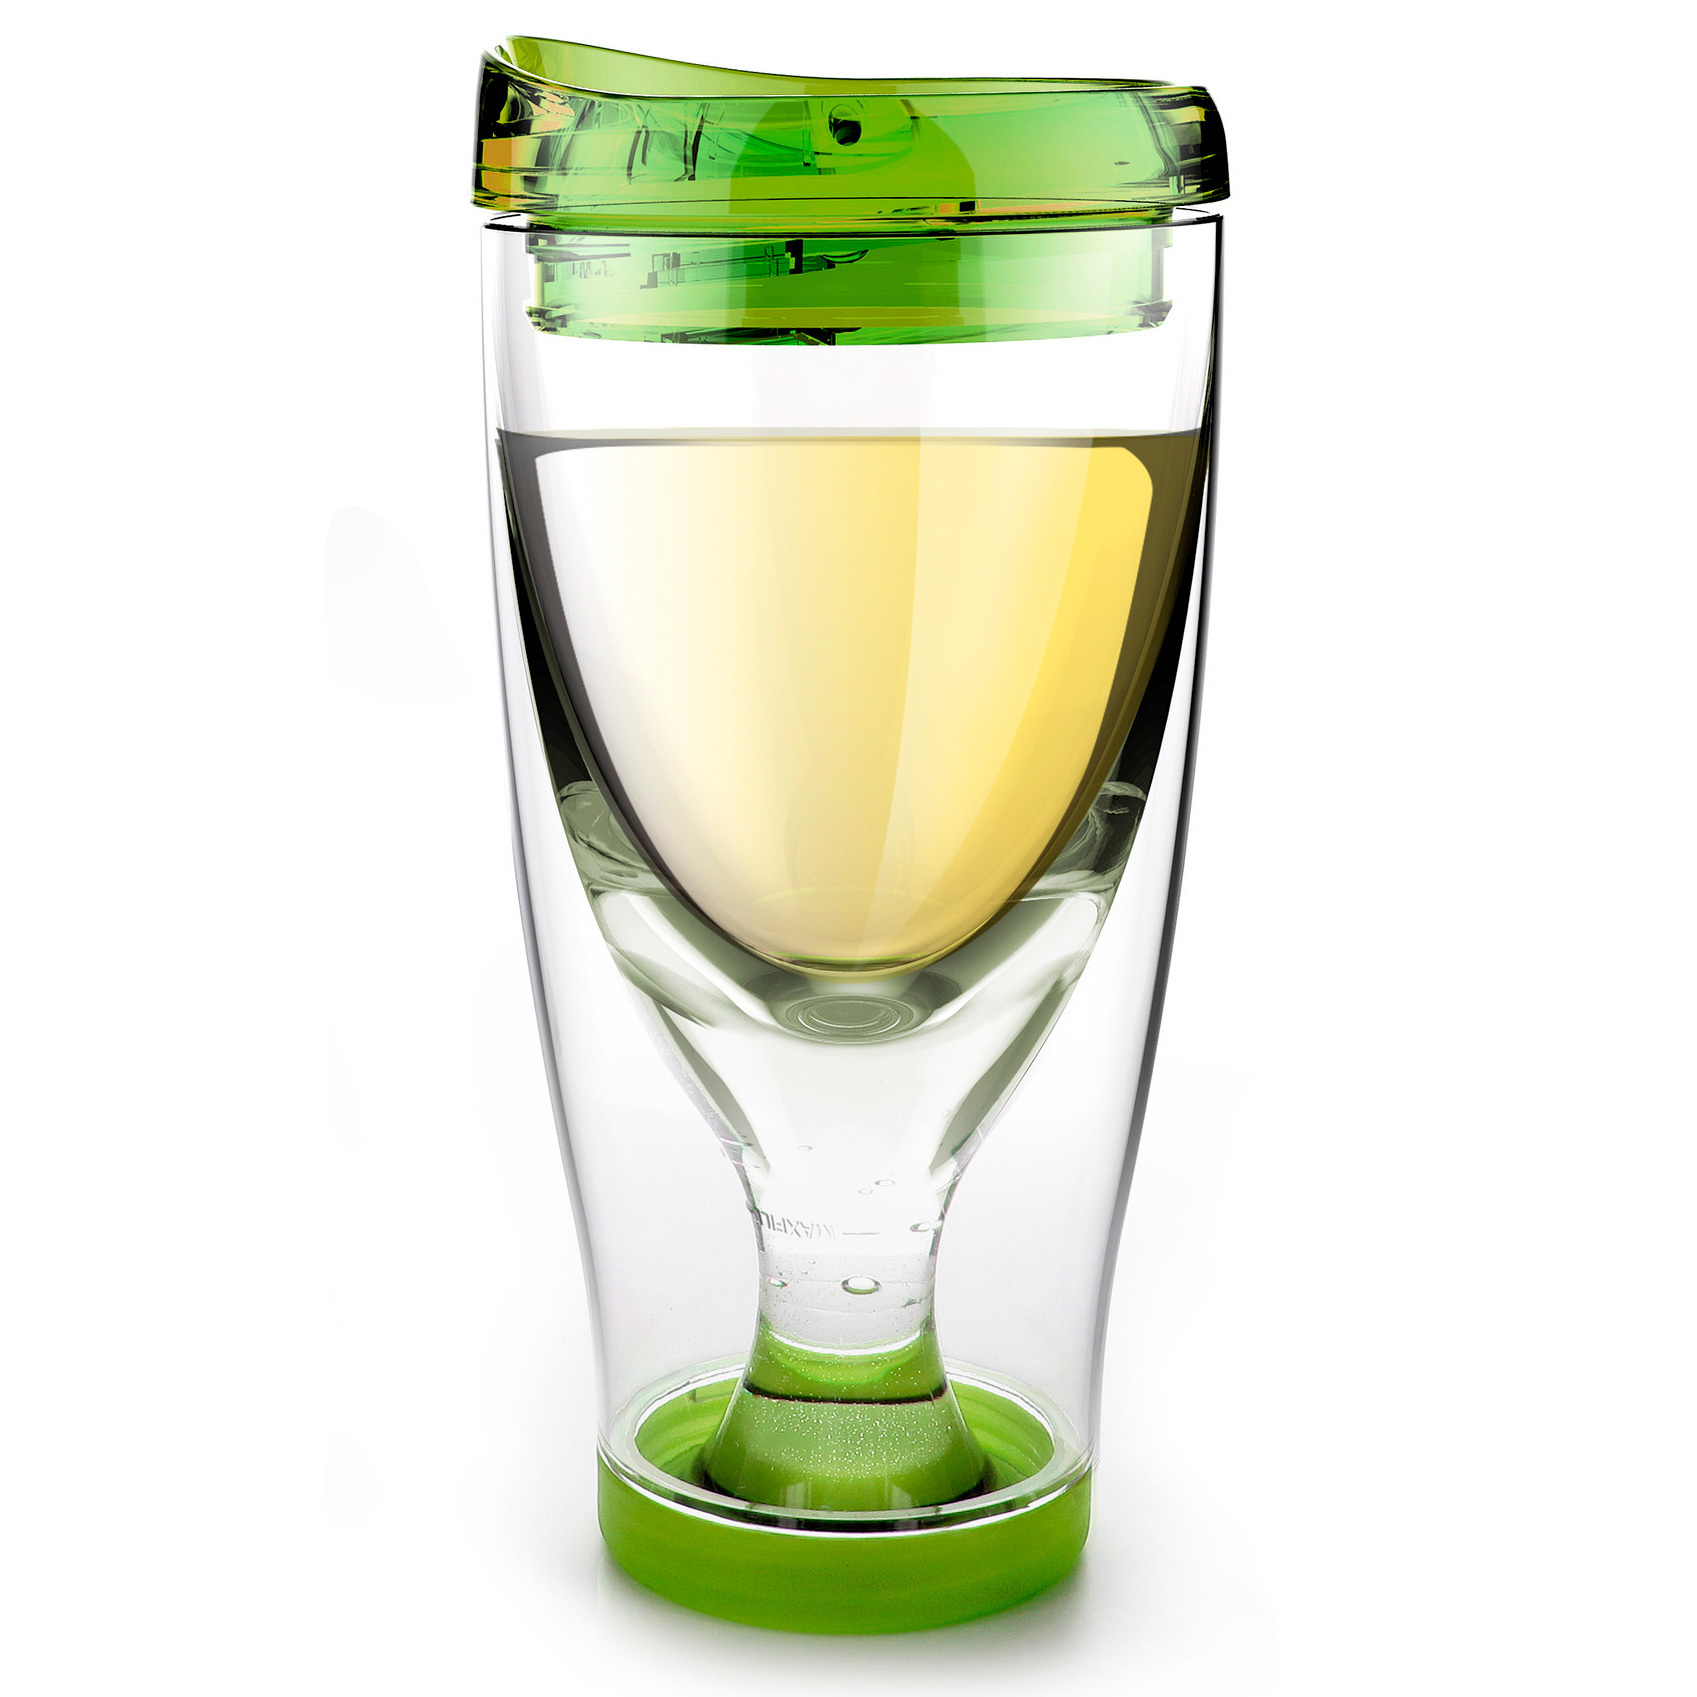  Ice vino 2go , 0.48  (Asobu IV2G green)